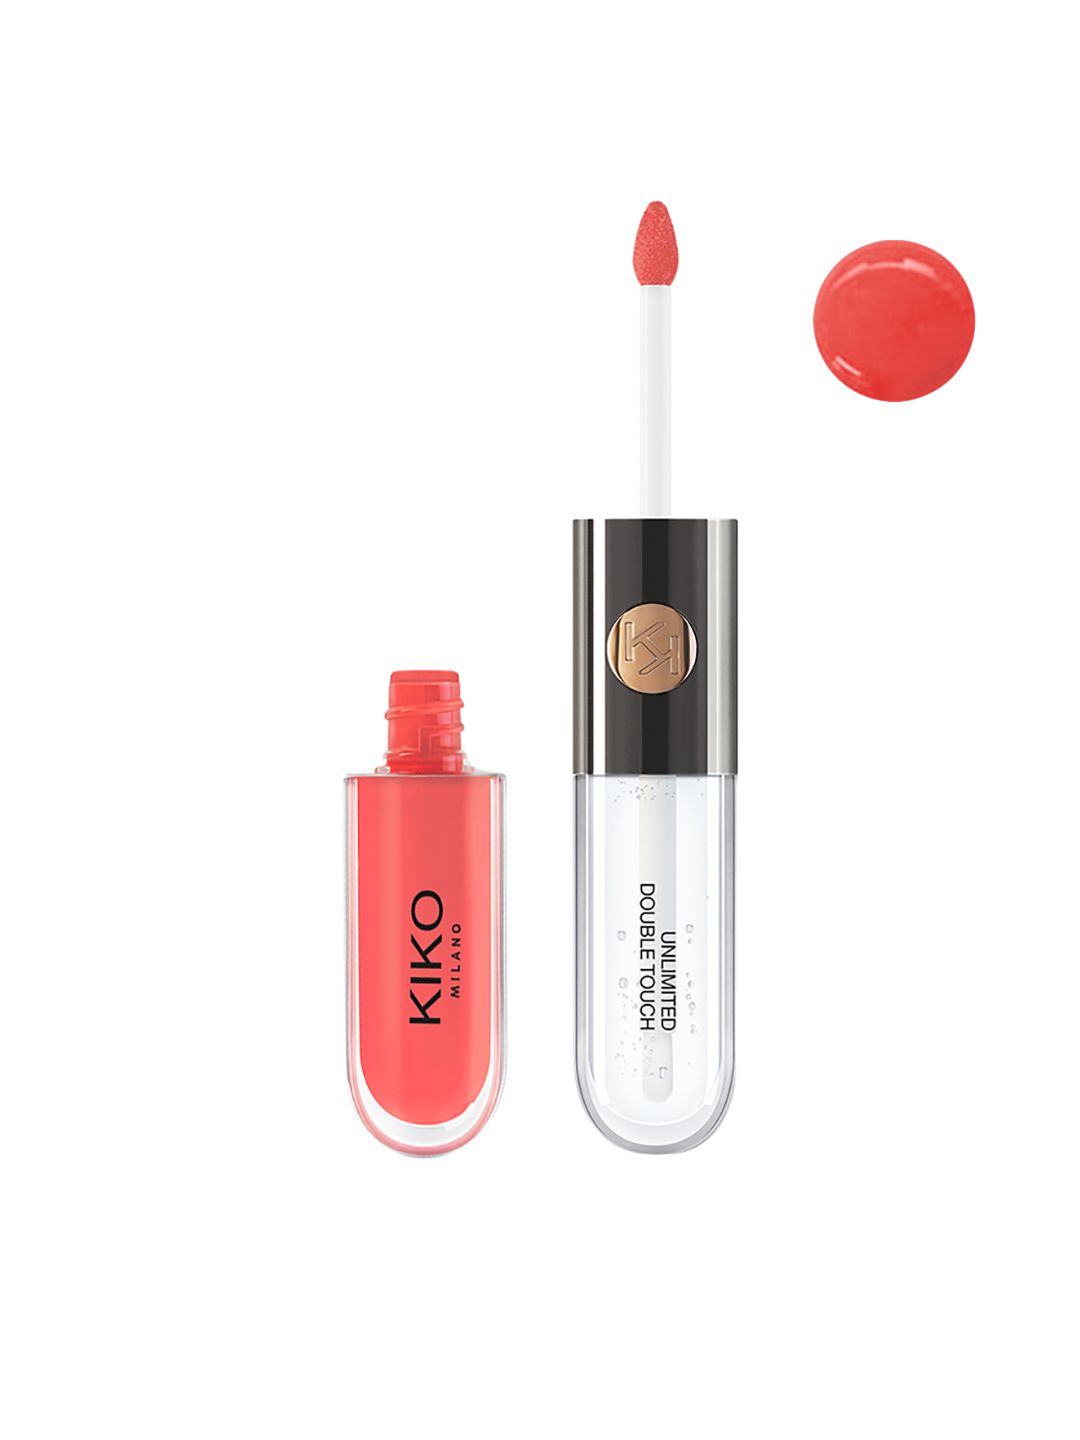 KIKO MILANO Unlimited Double Touch Liquid Lip Colour 113 6 ml Price in India